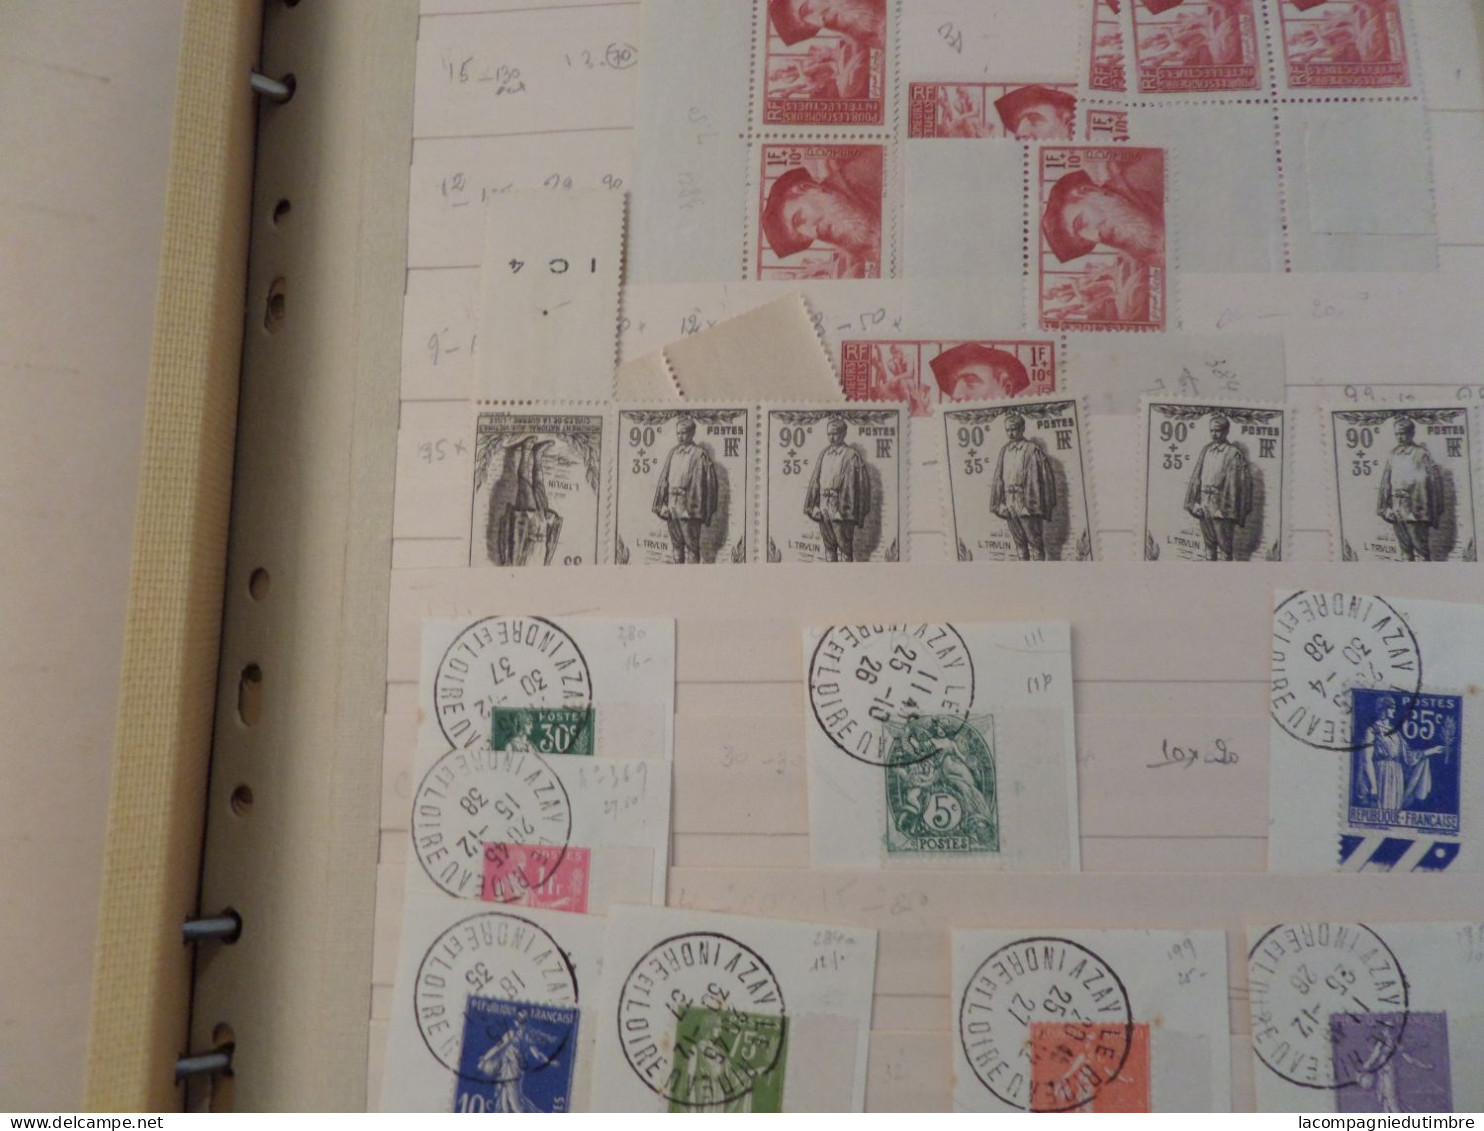 Enorme vrac de plusieurs milliers de timbres de France **/*/obl. 1900/2010. Très forte cote!  A SAISIR!!!!